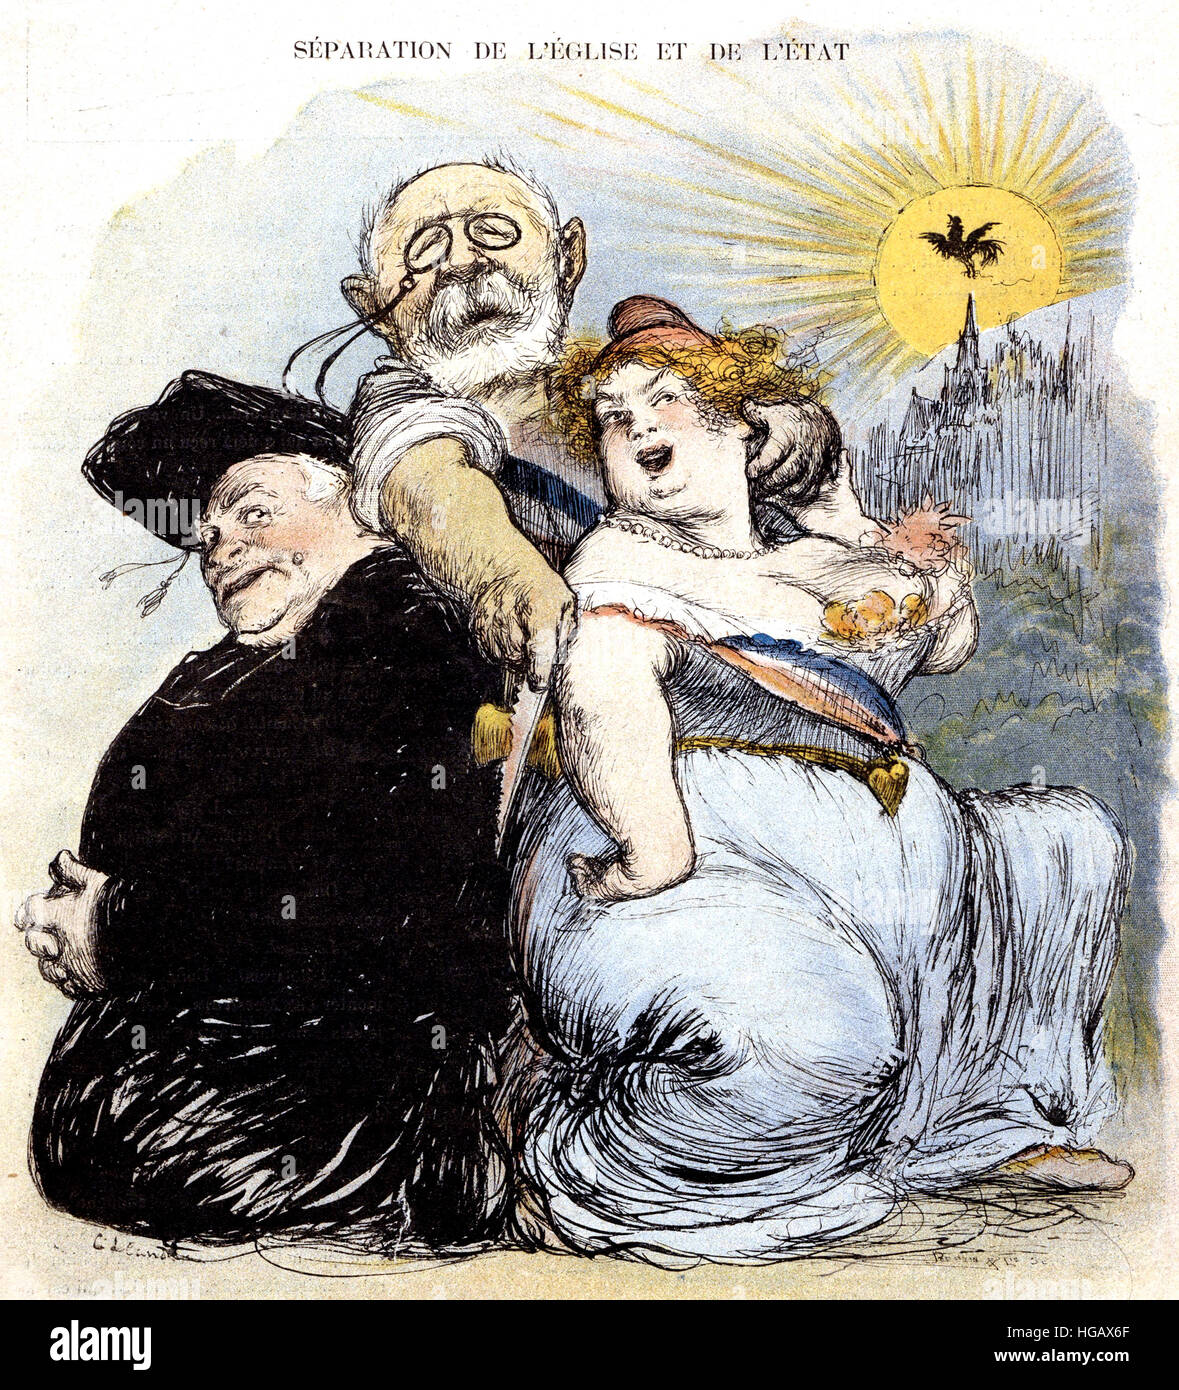 LE RIRE Mai 1905. Magazine satirique français dessin animé sur la séparation de l'église et de l'état dans l'année Banque D'Images